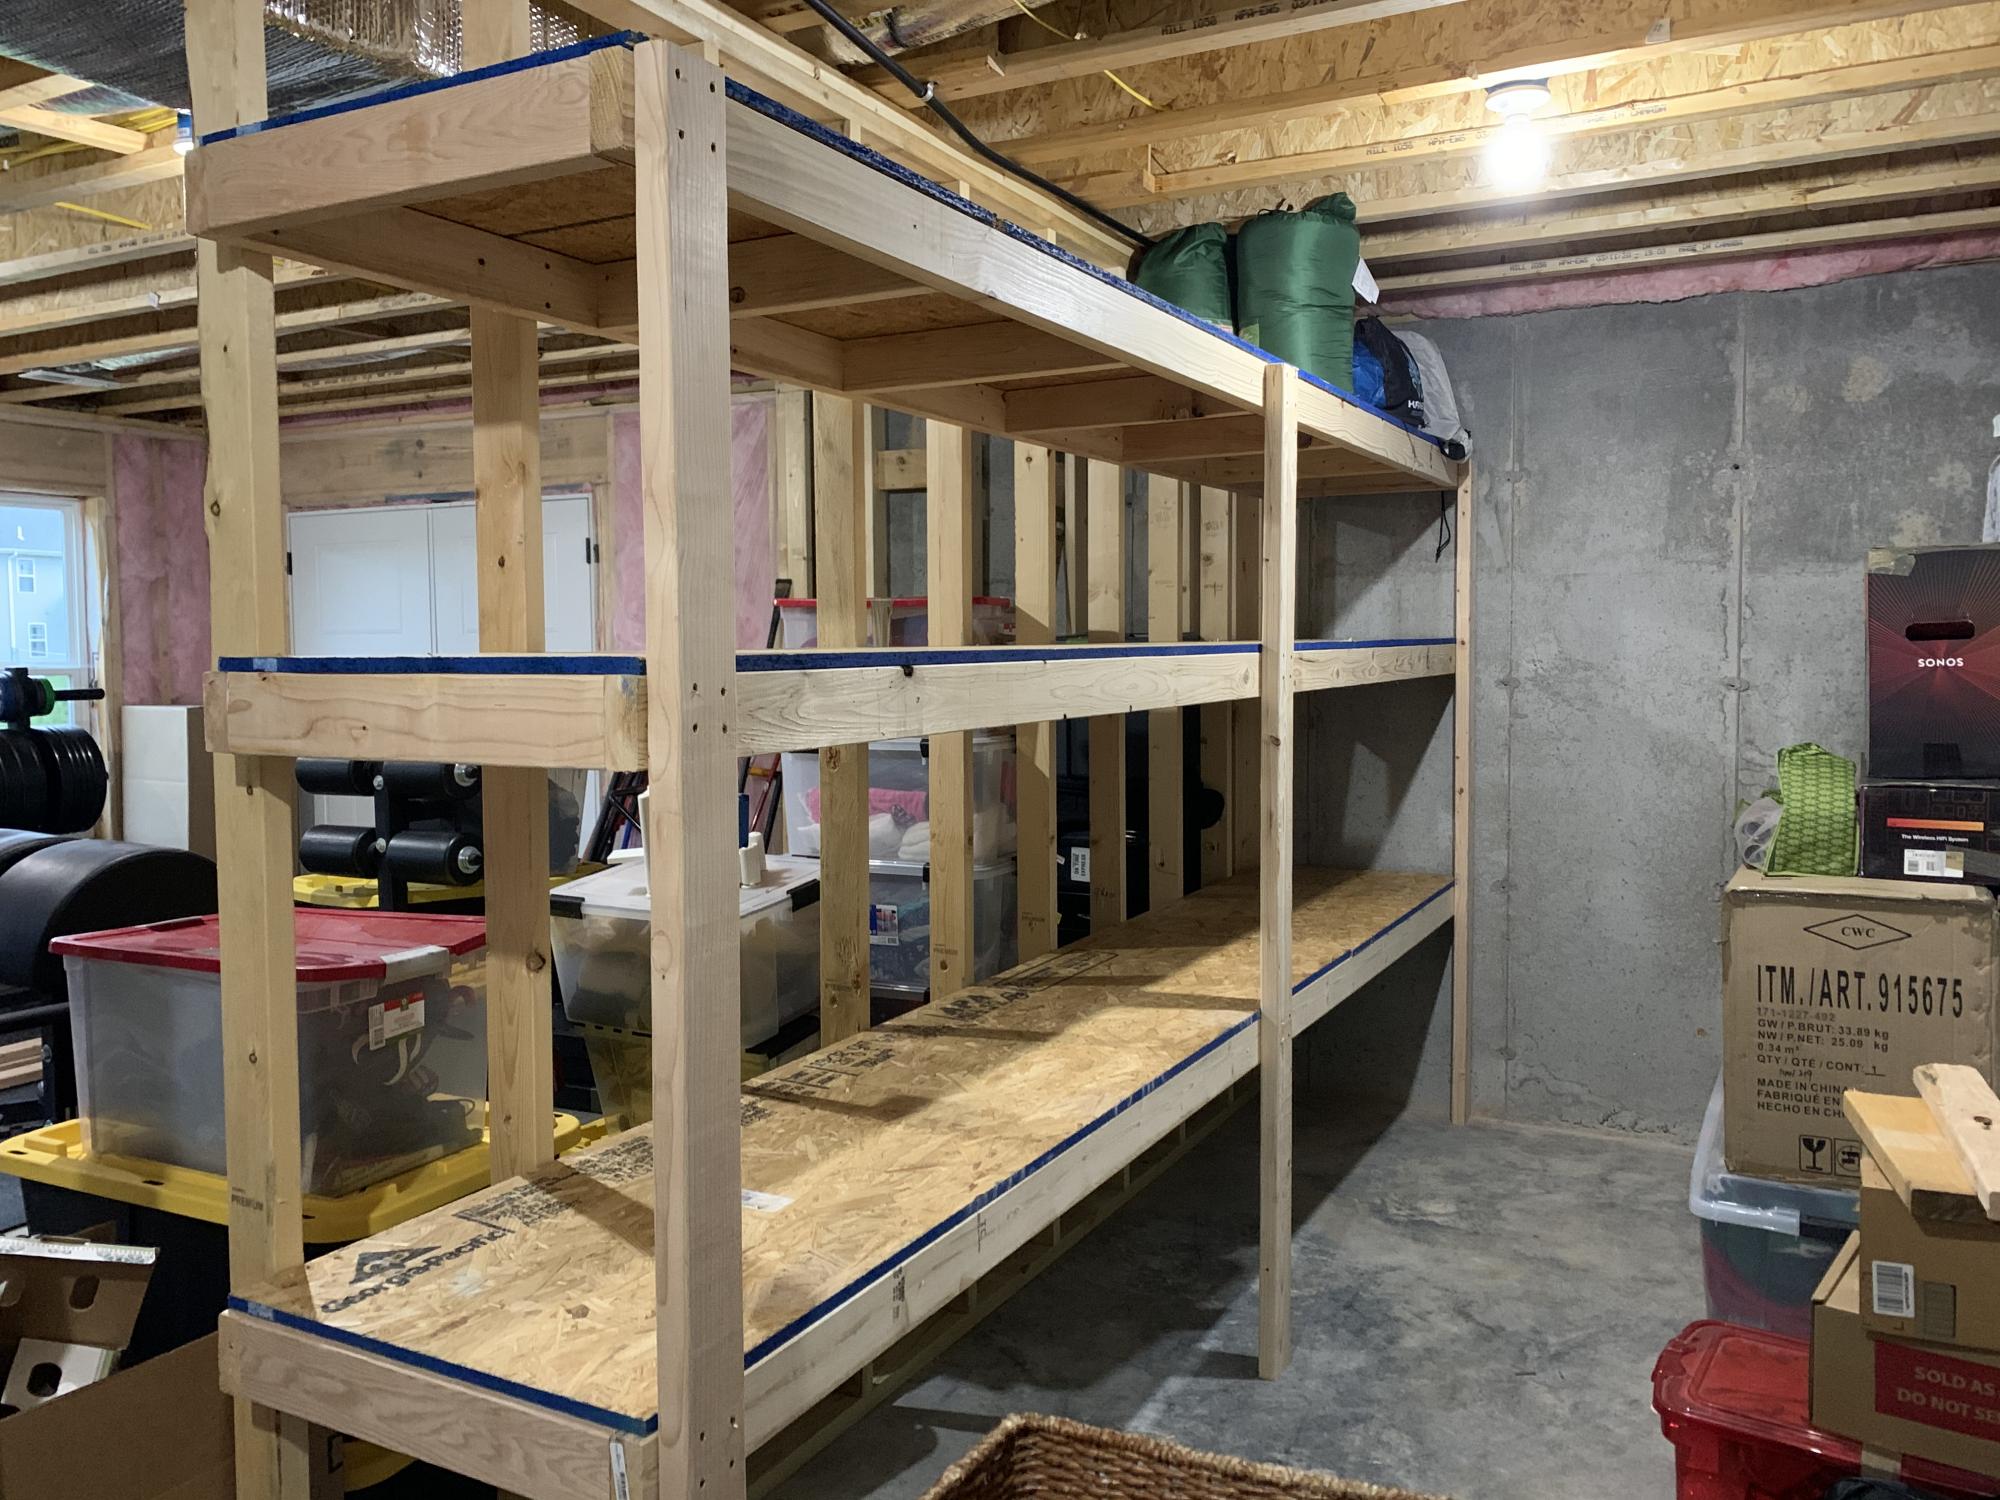 How to Make a Basement Storage Shelf